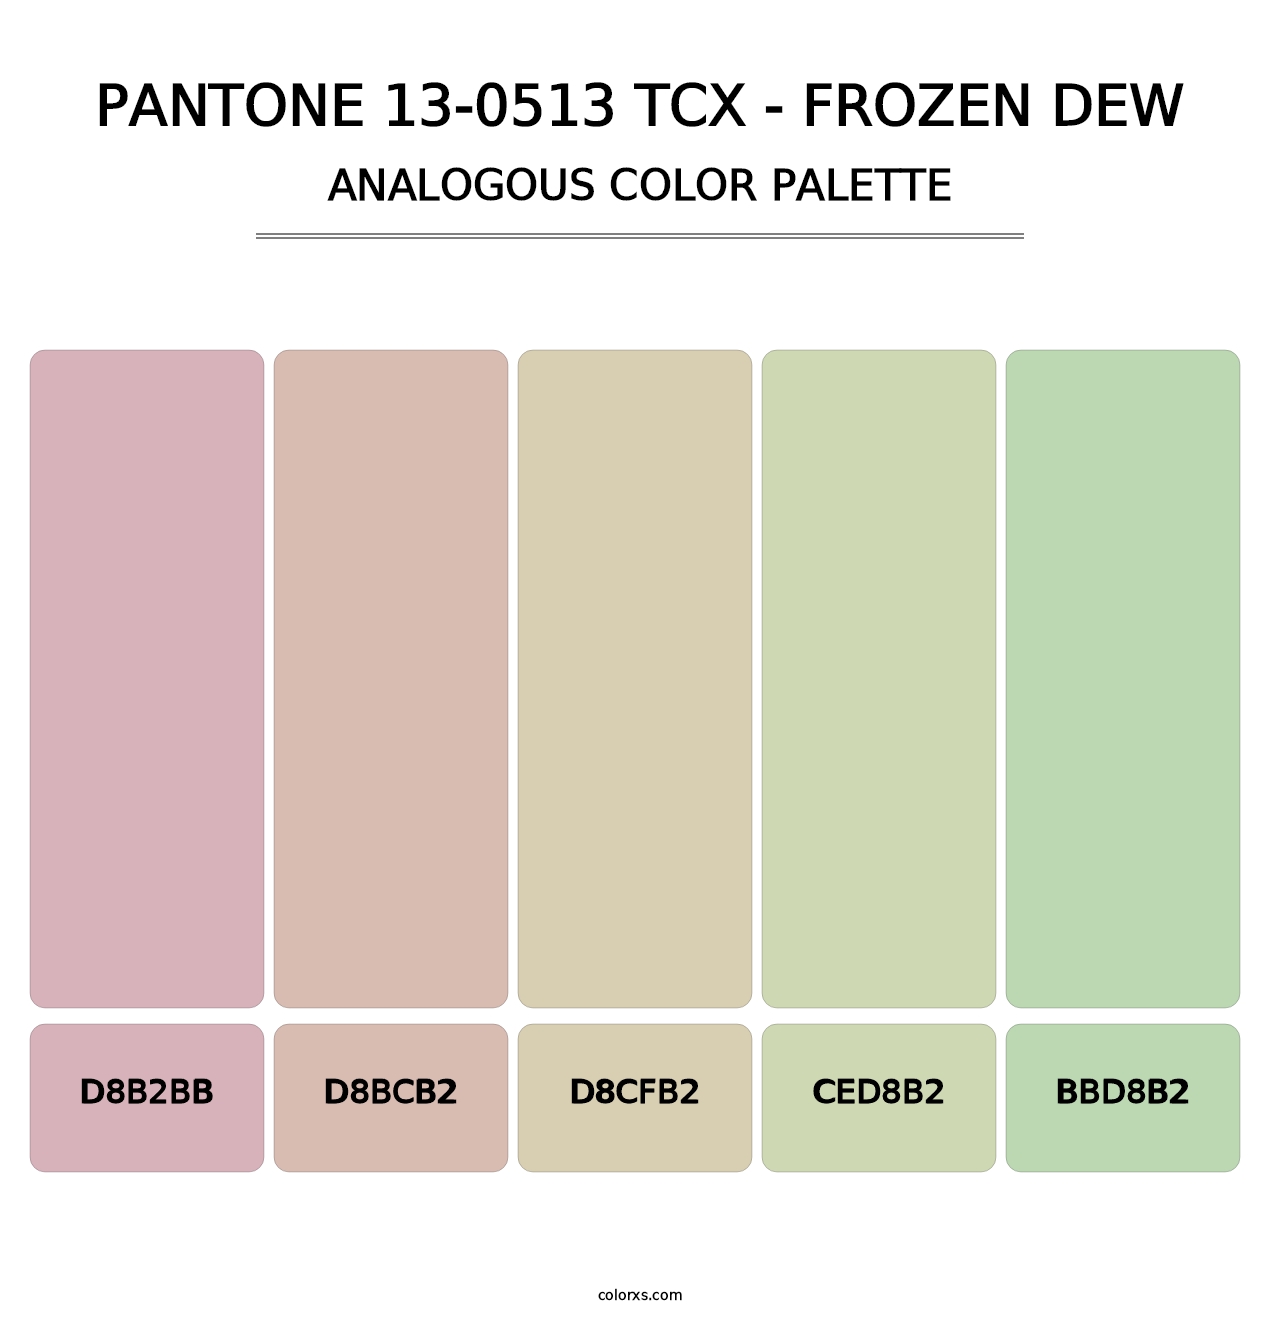 PANTONE 13-0513 TCX - Frozen Dew - Analogous Color Palette